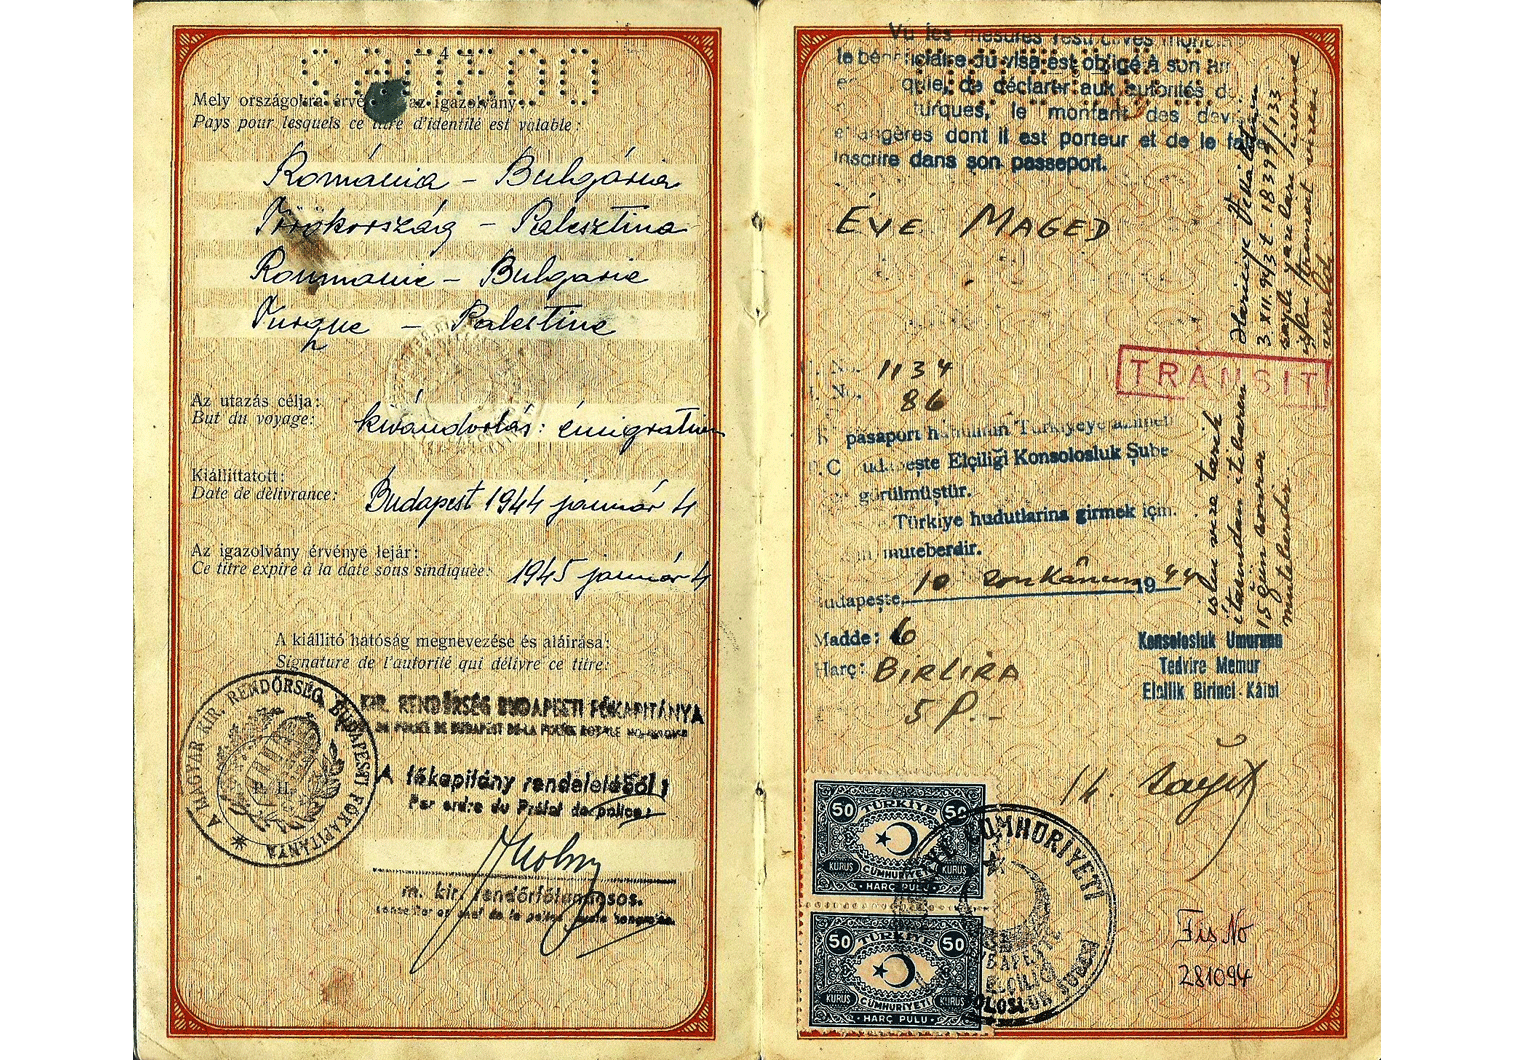 1944 Hungarian passport